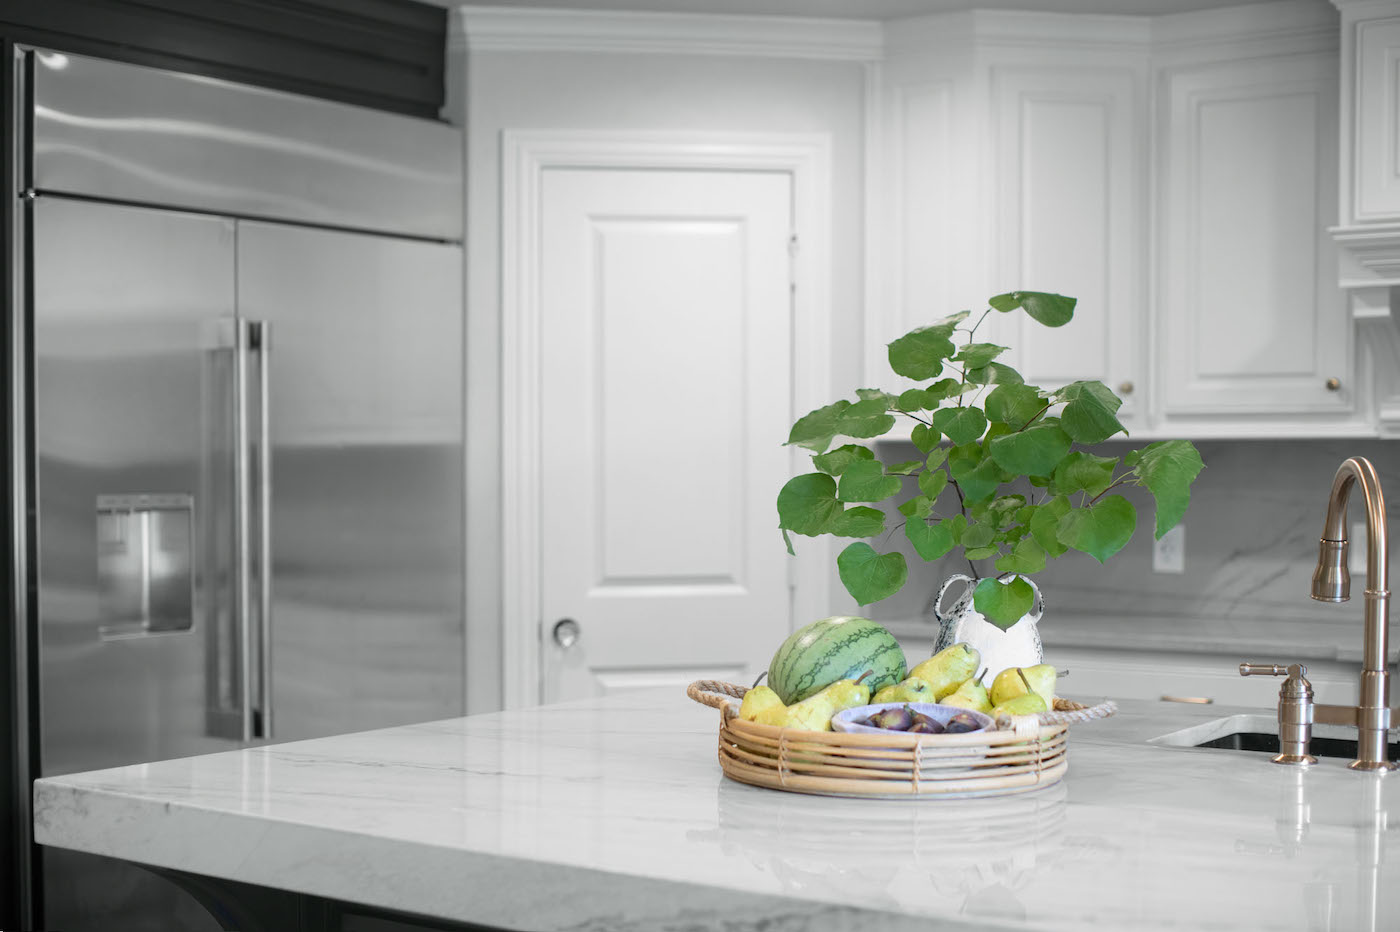 marble-kitchen-island-stainless-steel-refrigerator